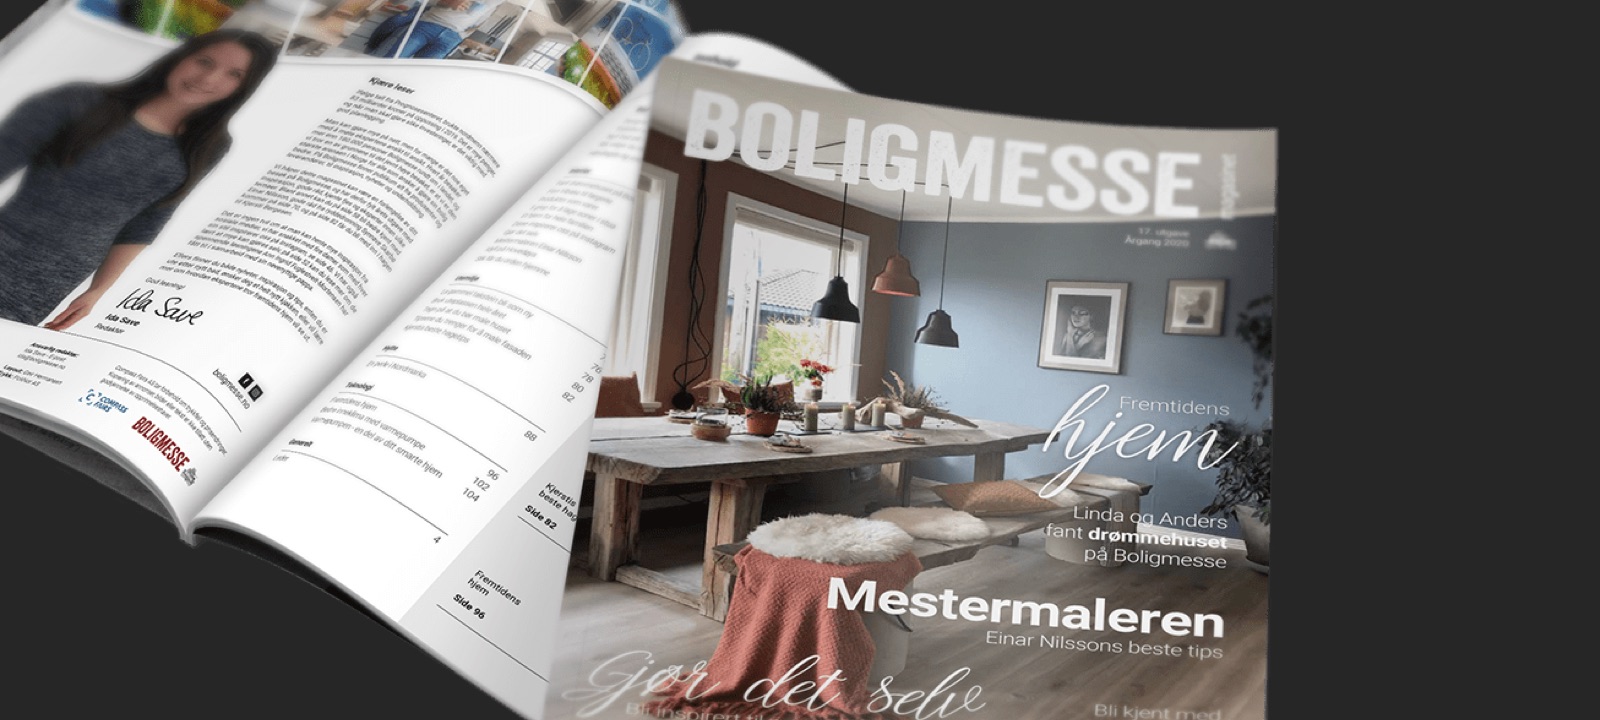 Boligmesse's Magazine